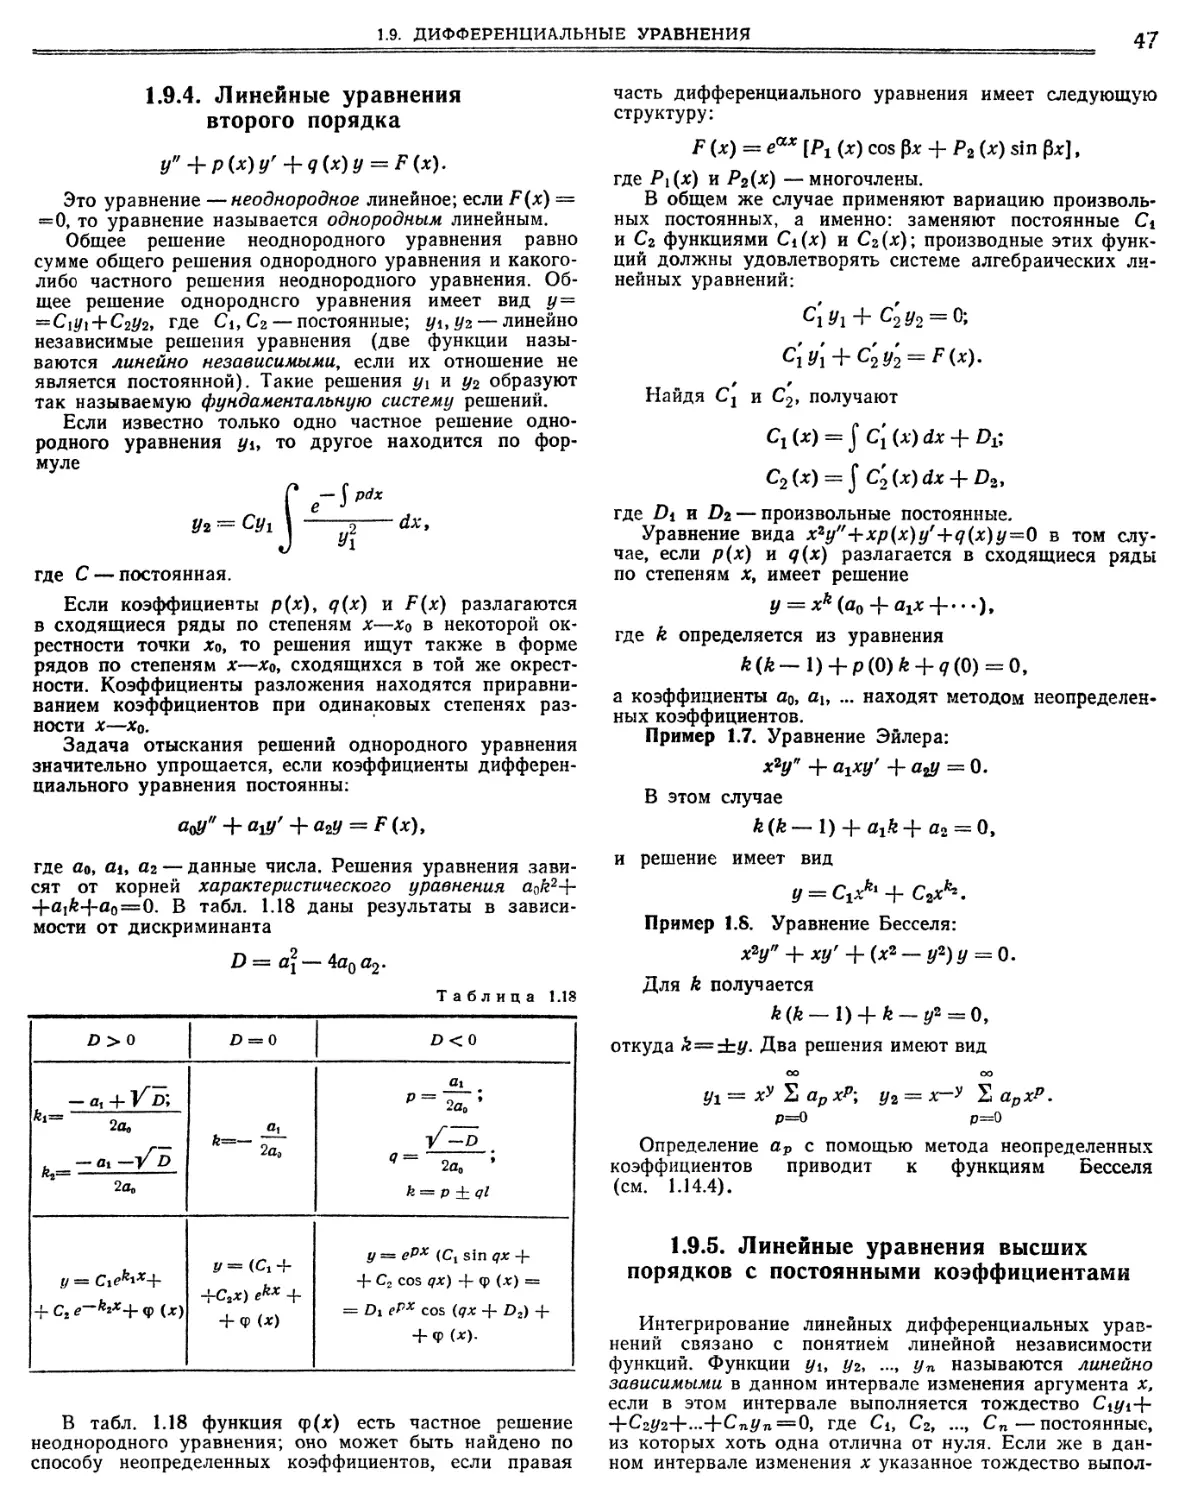 1.9.4. Линейные уравнения второго порядка
1.9.5. Линейные уравнения высших порядков с постоянными коэффициентами